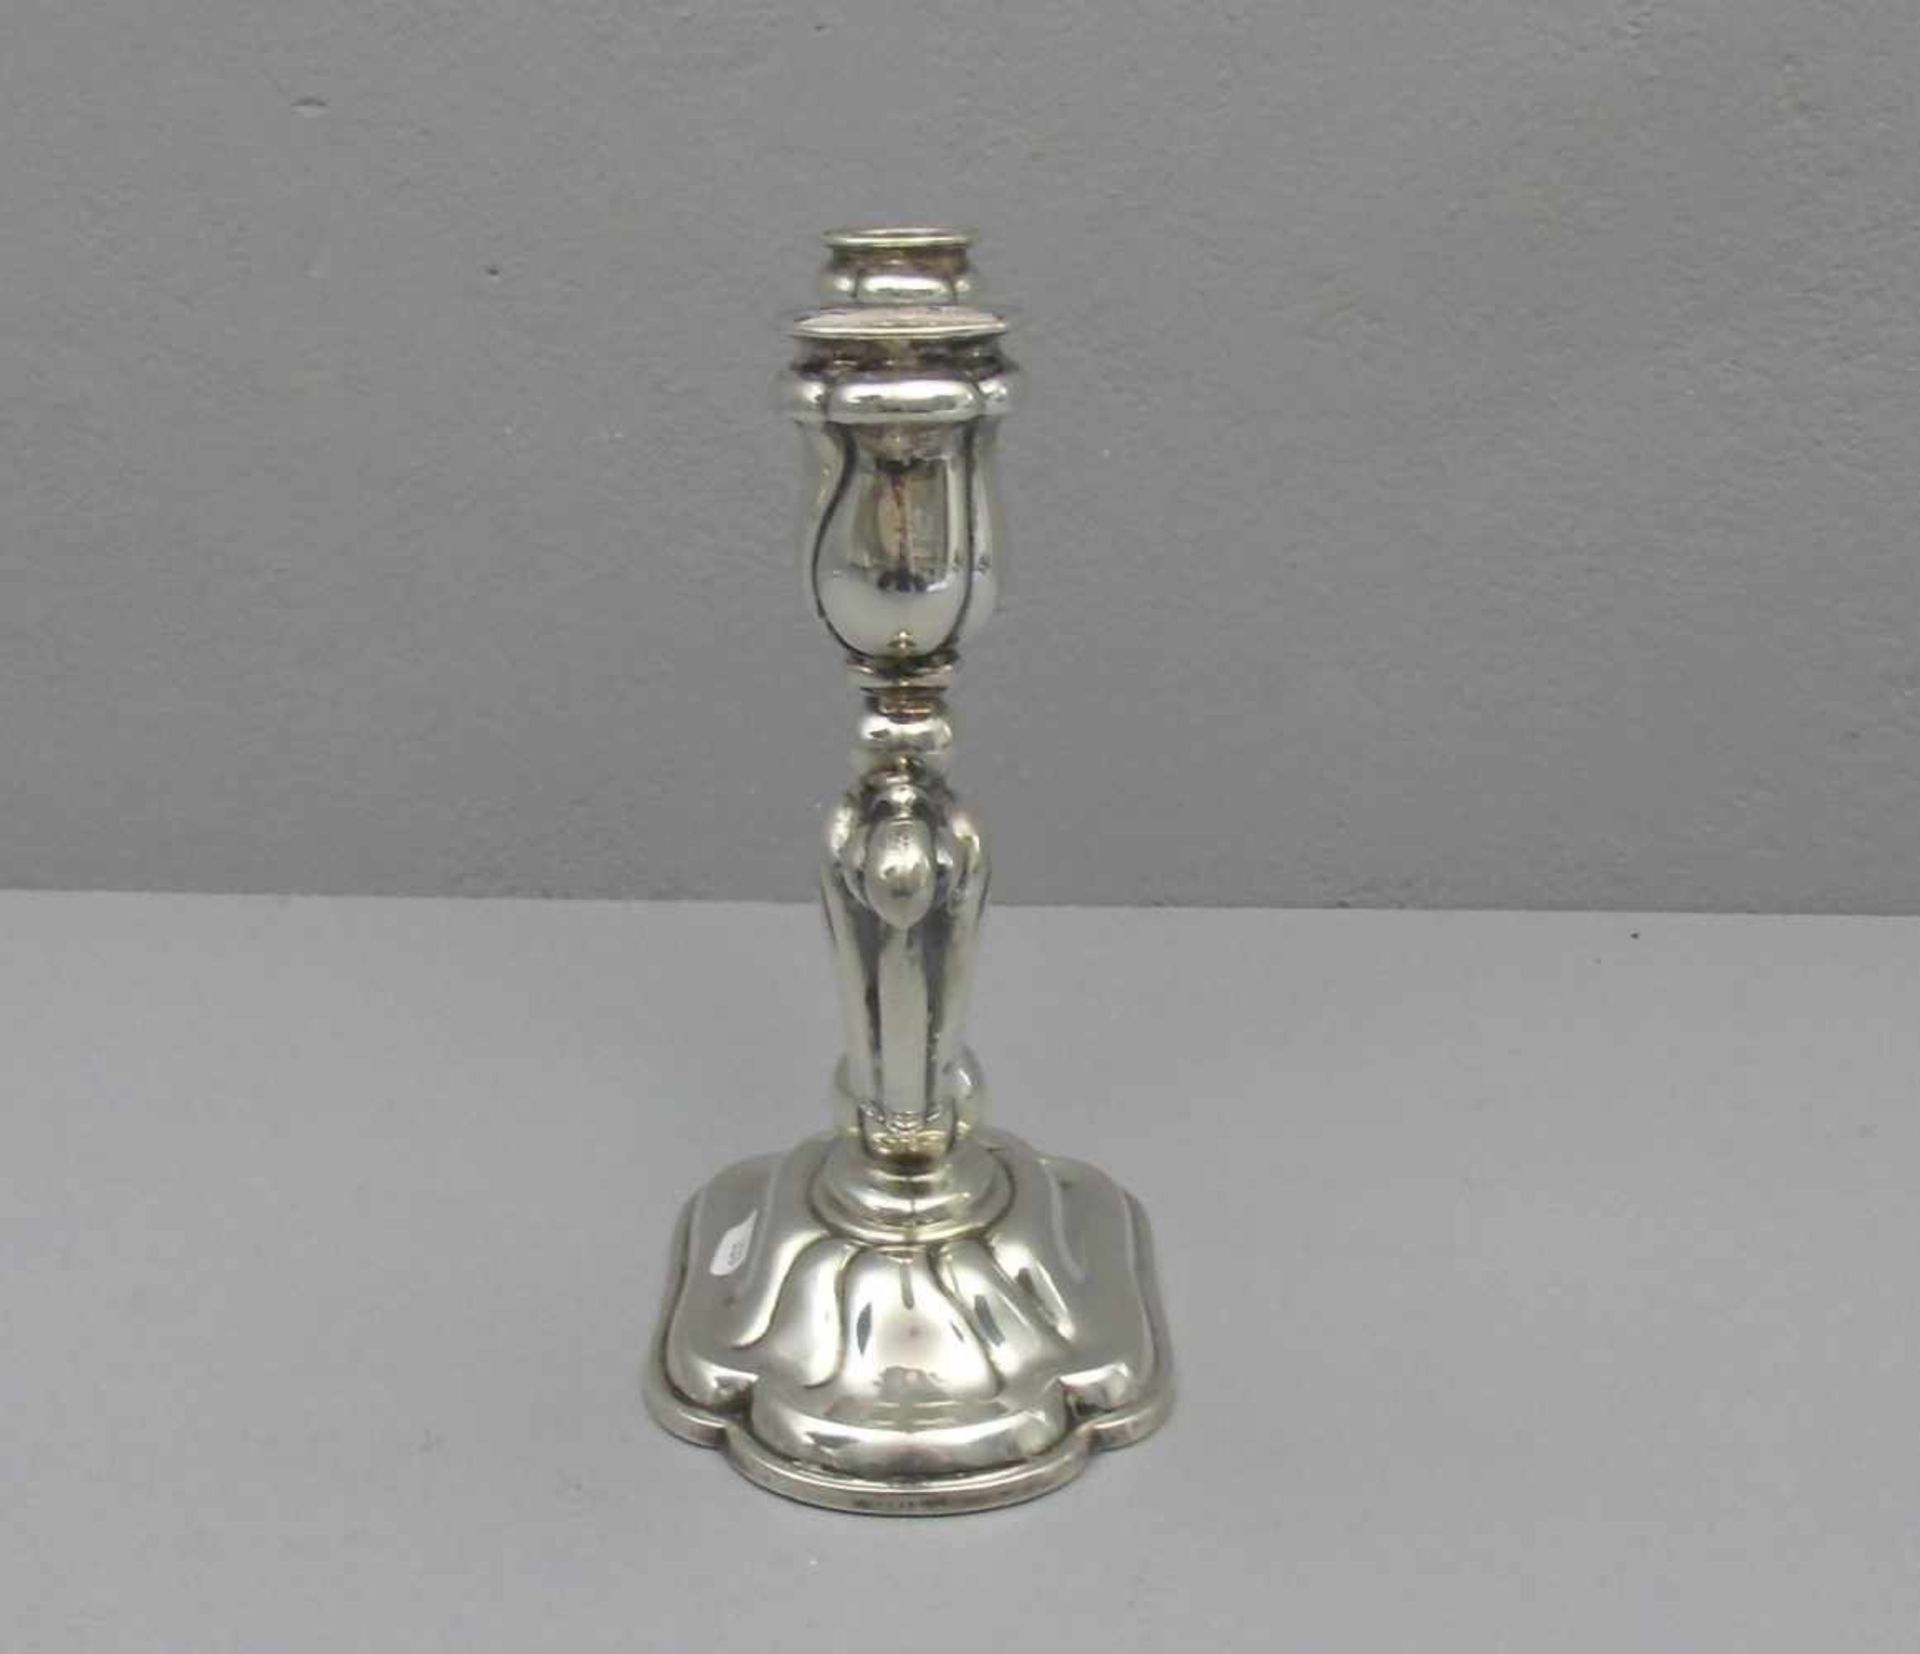 LEUCHTER / TISCHLEUCHTER / candle holder, zweiflammig, 830er Silber (mit beschwertem Fuß), gepunzt - Bild 2 aus 4